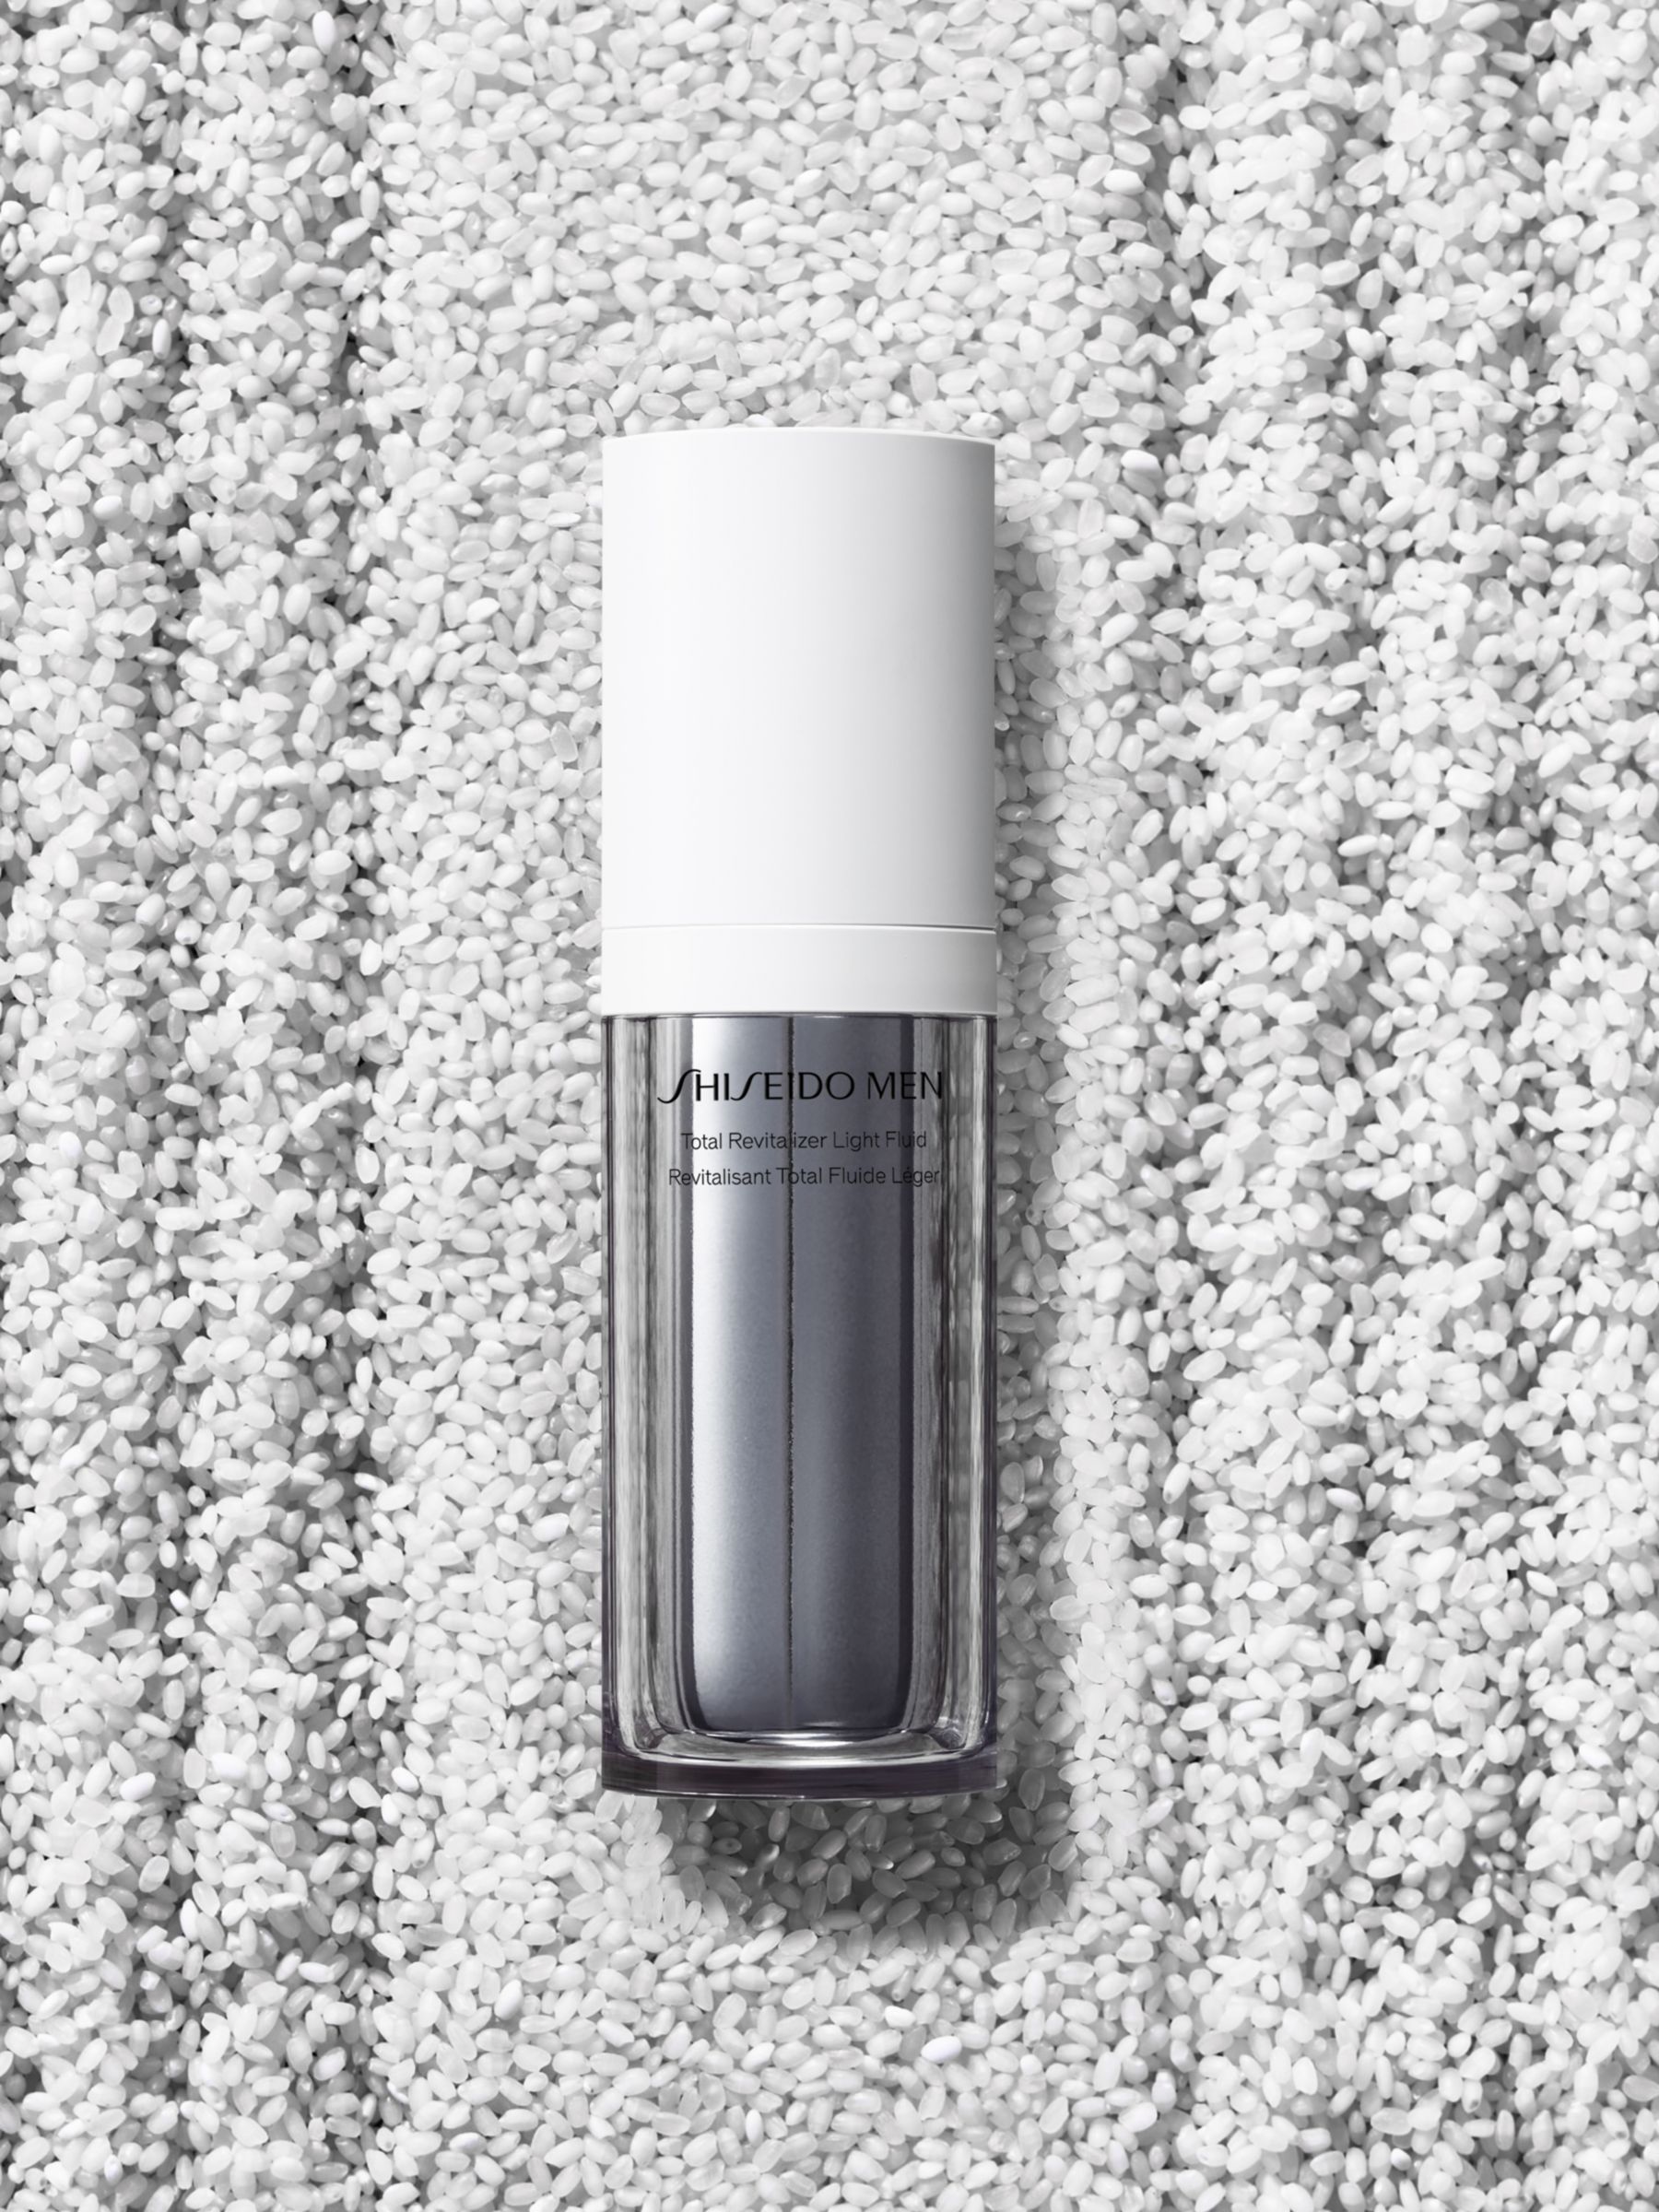 Shiseido Men Total Revitalizer Light Fluid, 70ml 5